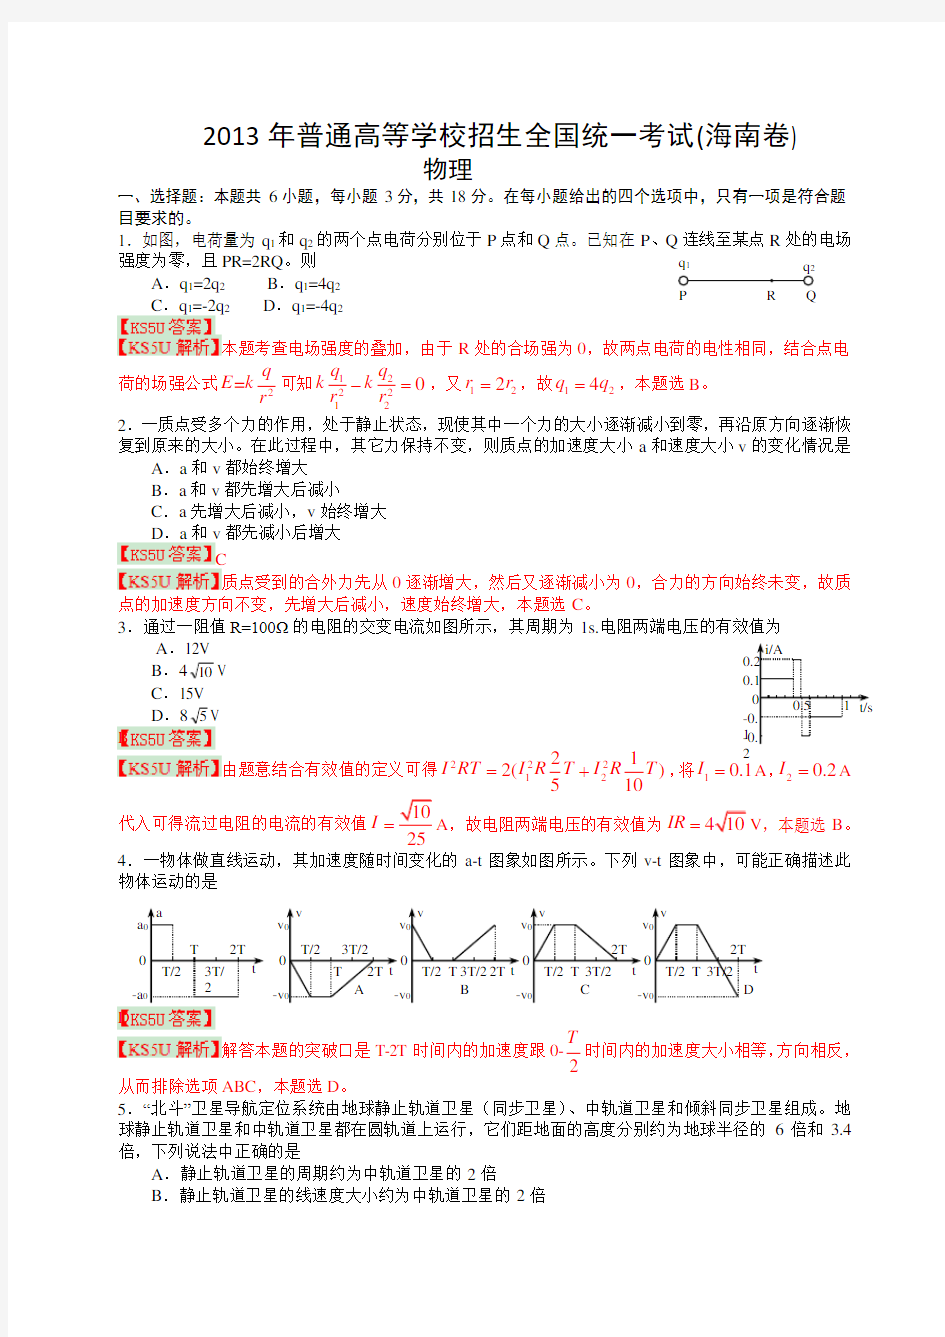 2013年高考真题——物理(海南卷)解析版